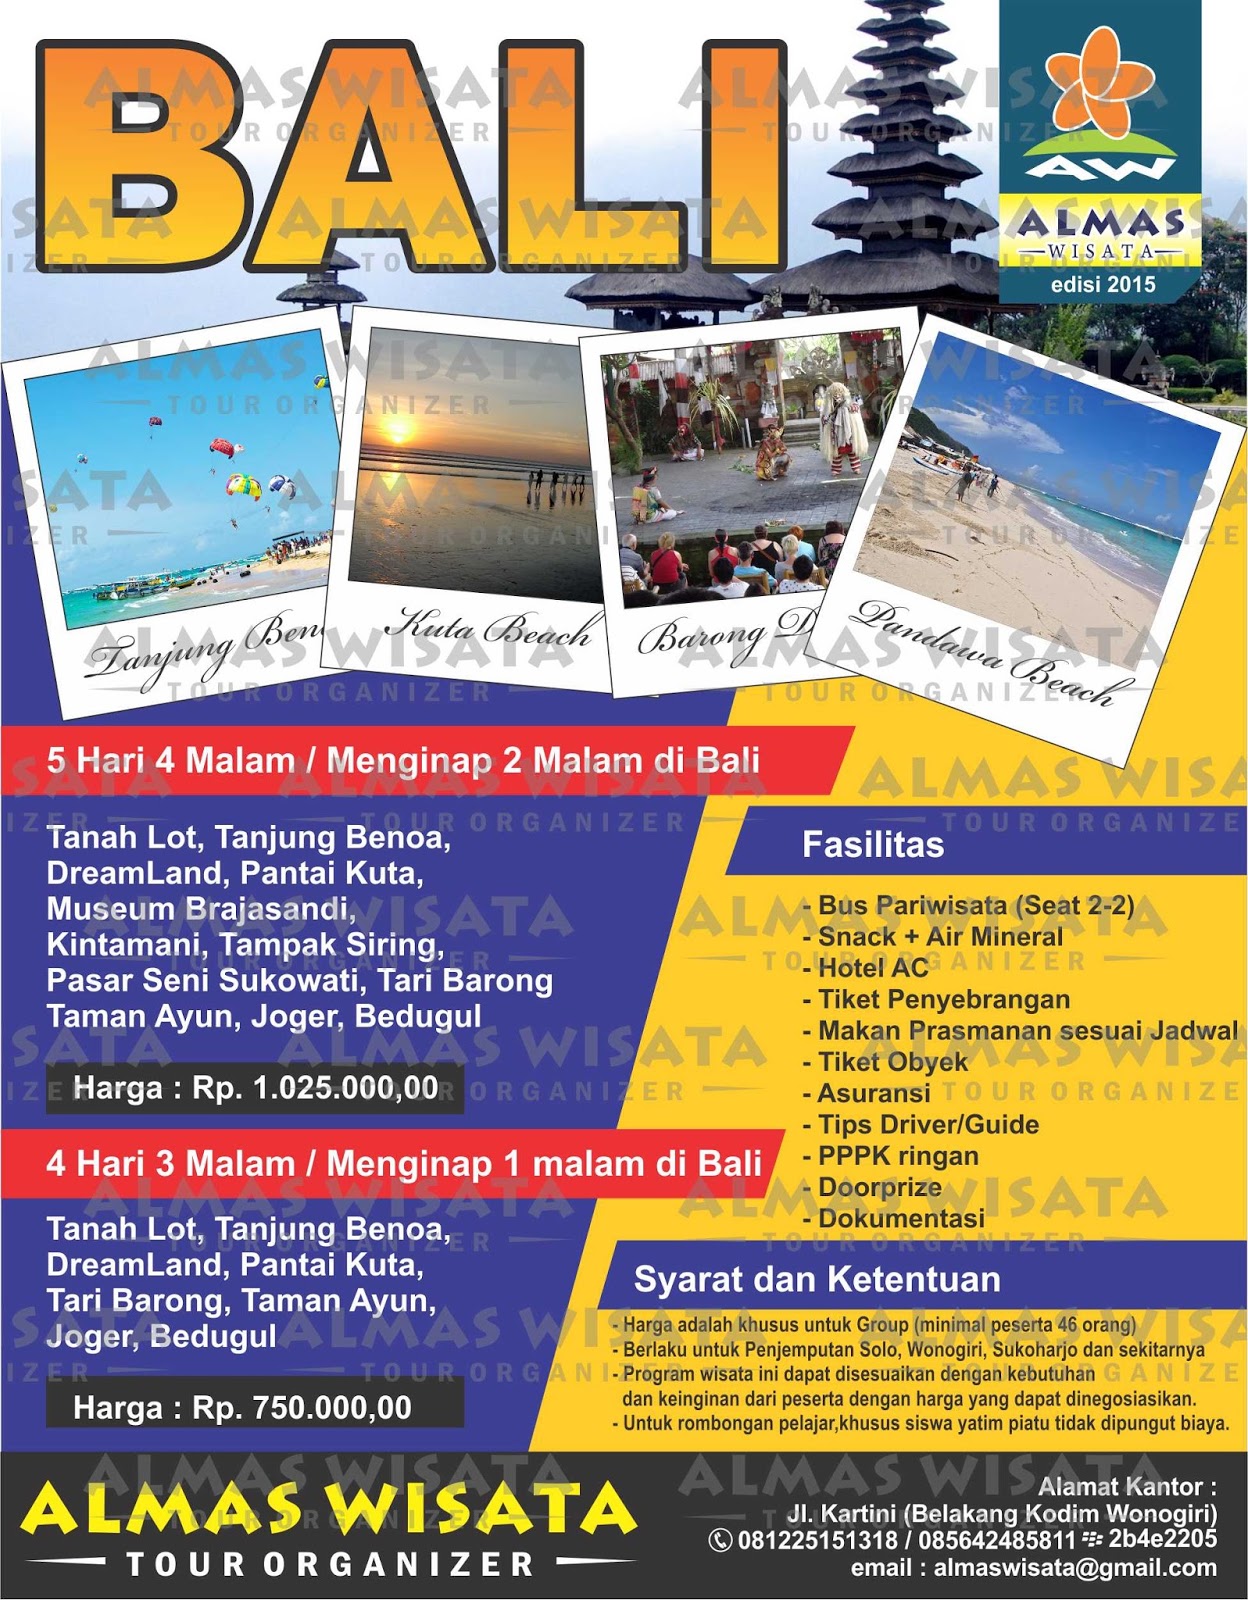 Paket Wisata 2015: Liburan ke BALI